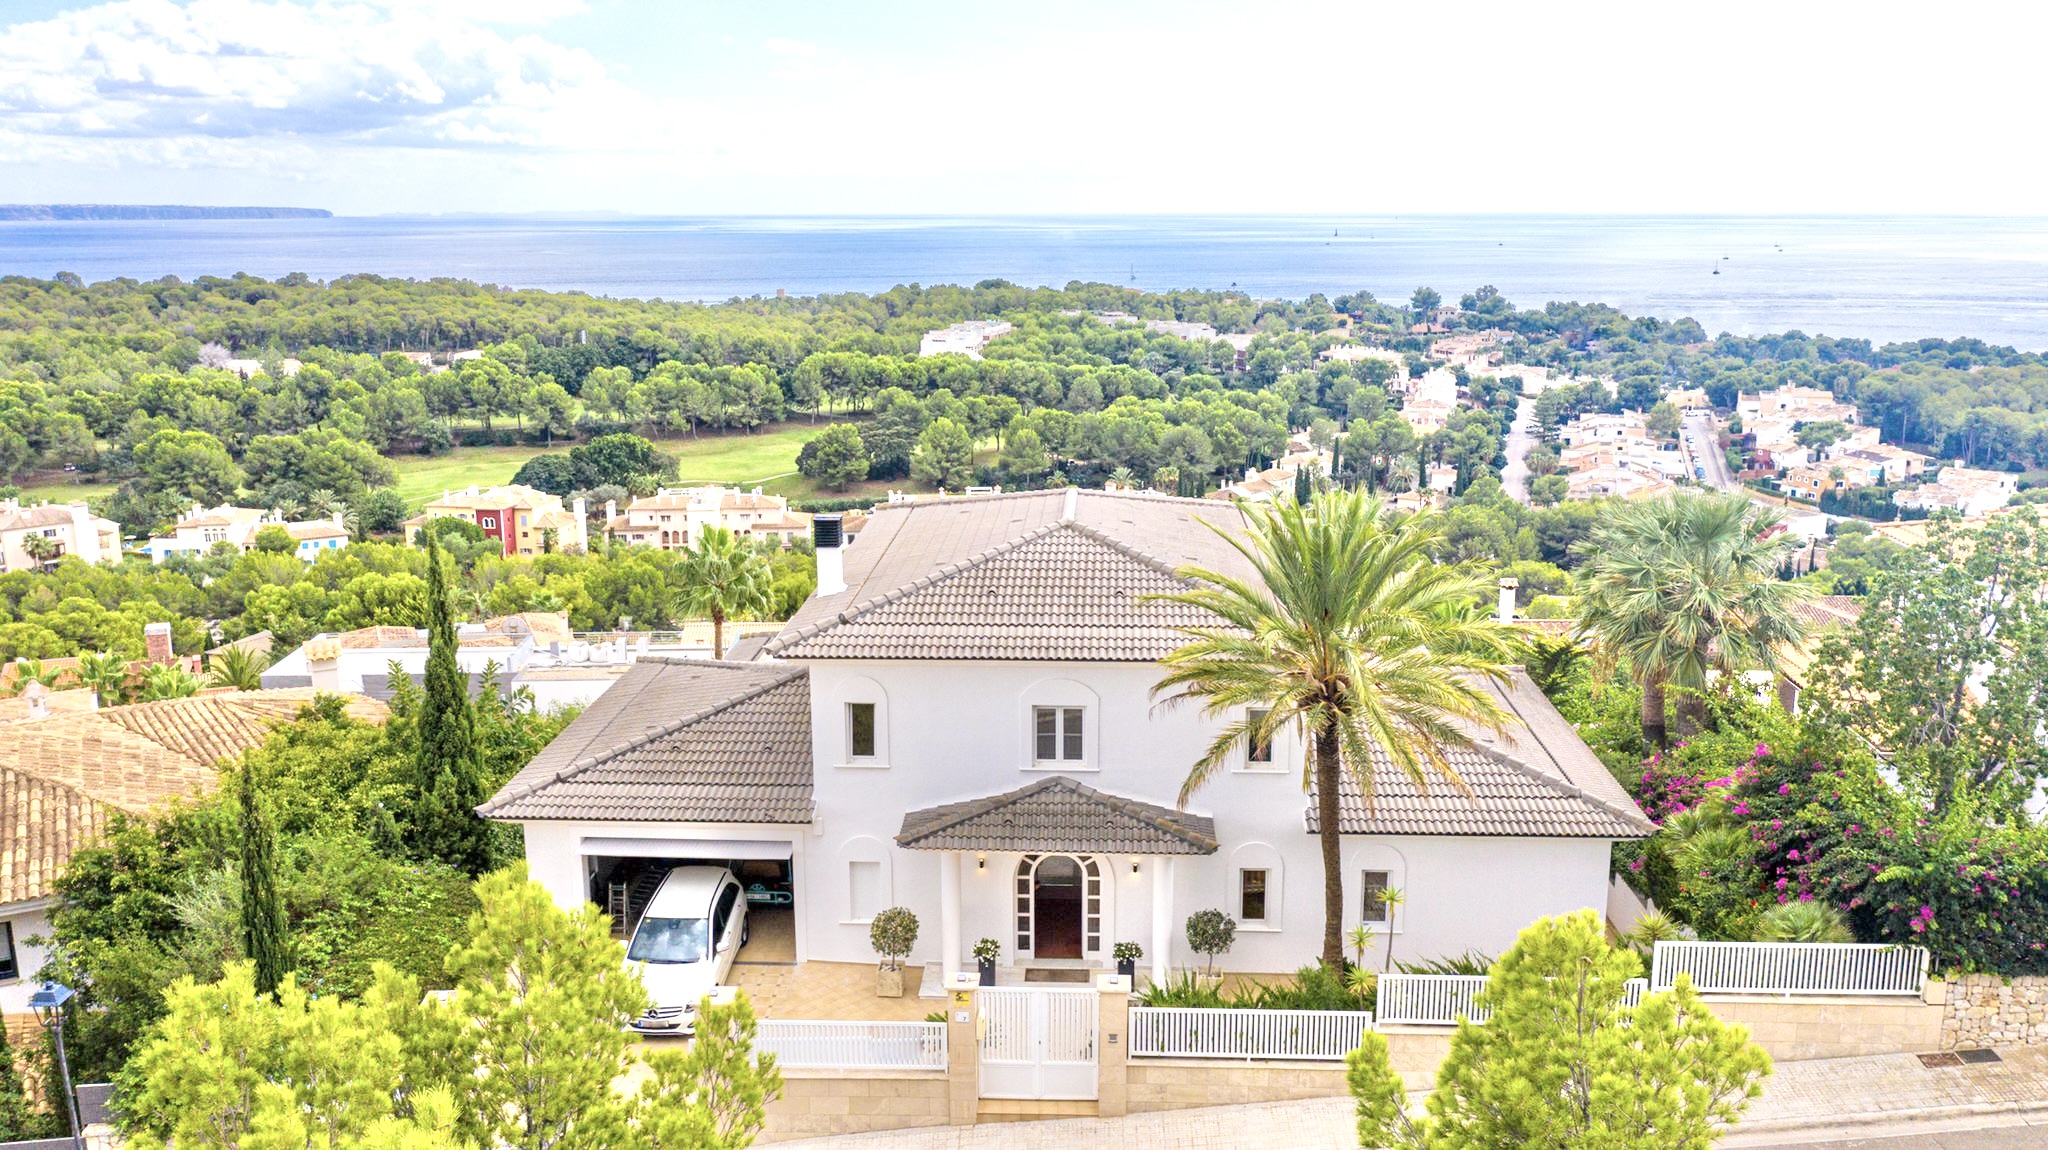 Villa de estilo mediterráneo con vistas panorámicas al mar